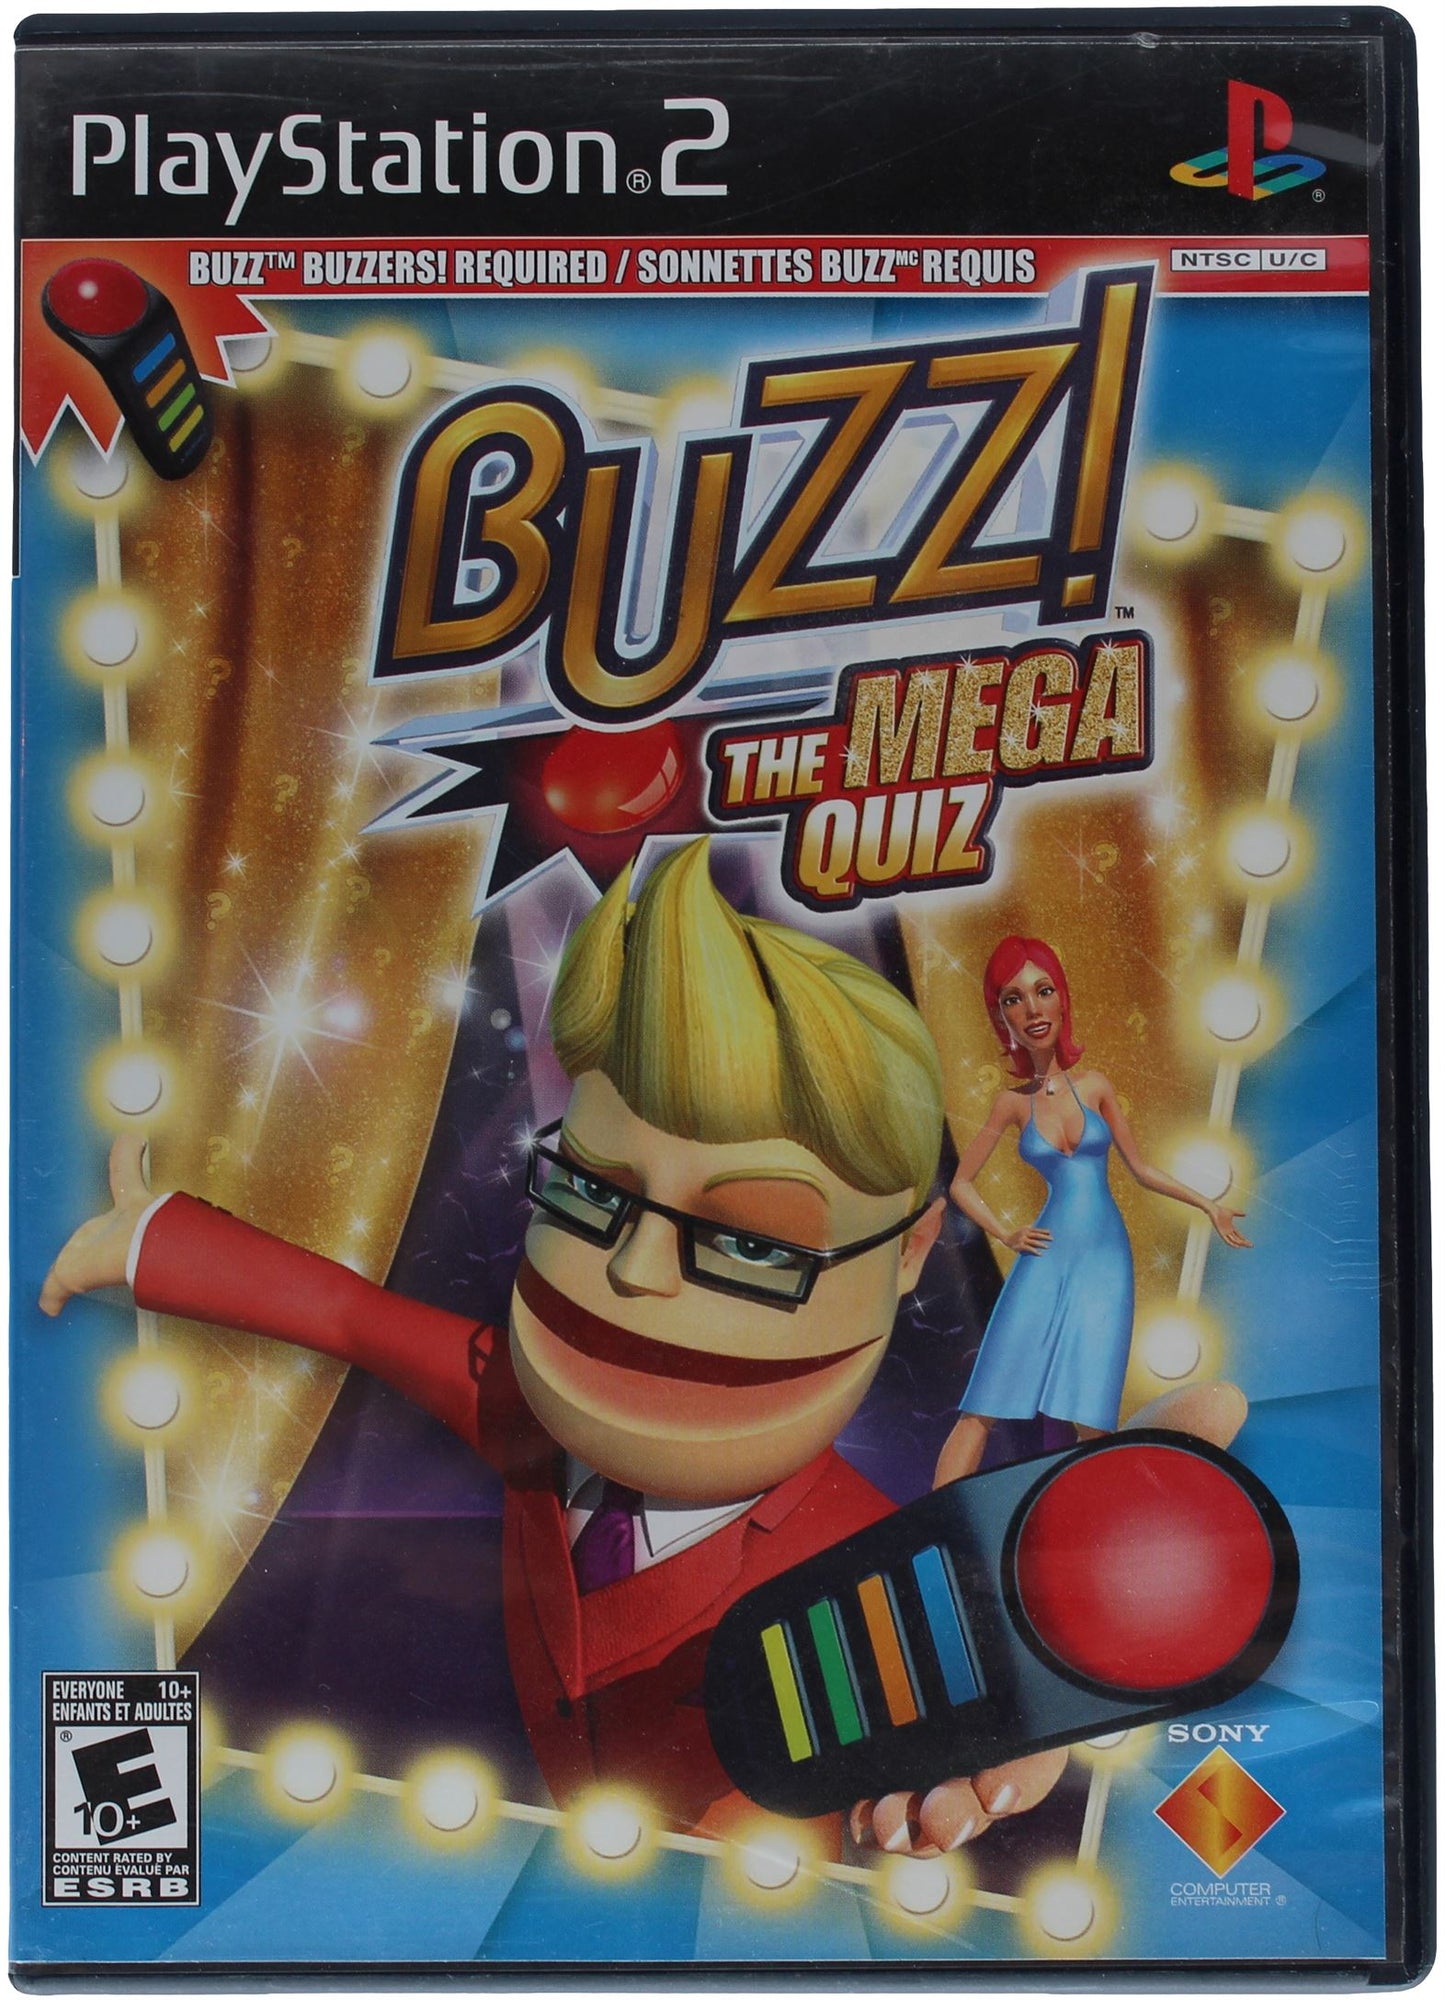 BUZZ! The Mega Quiz